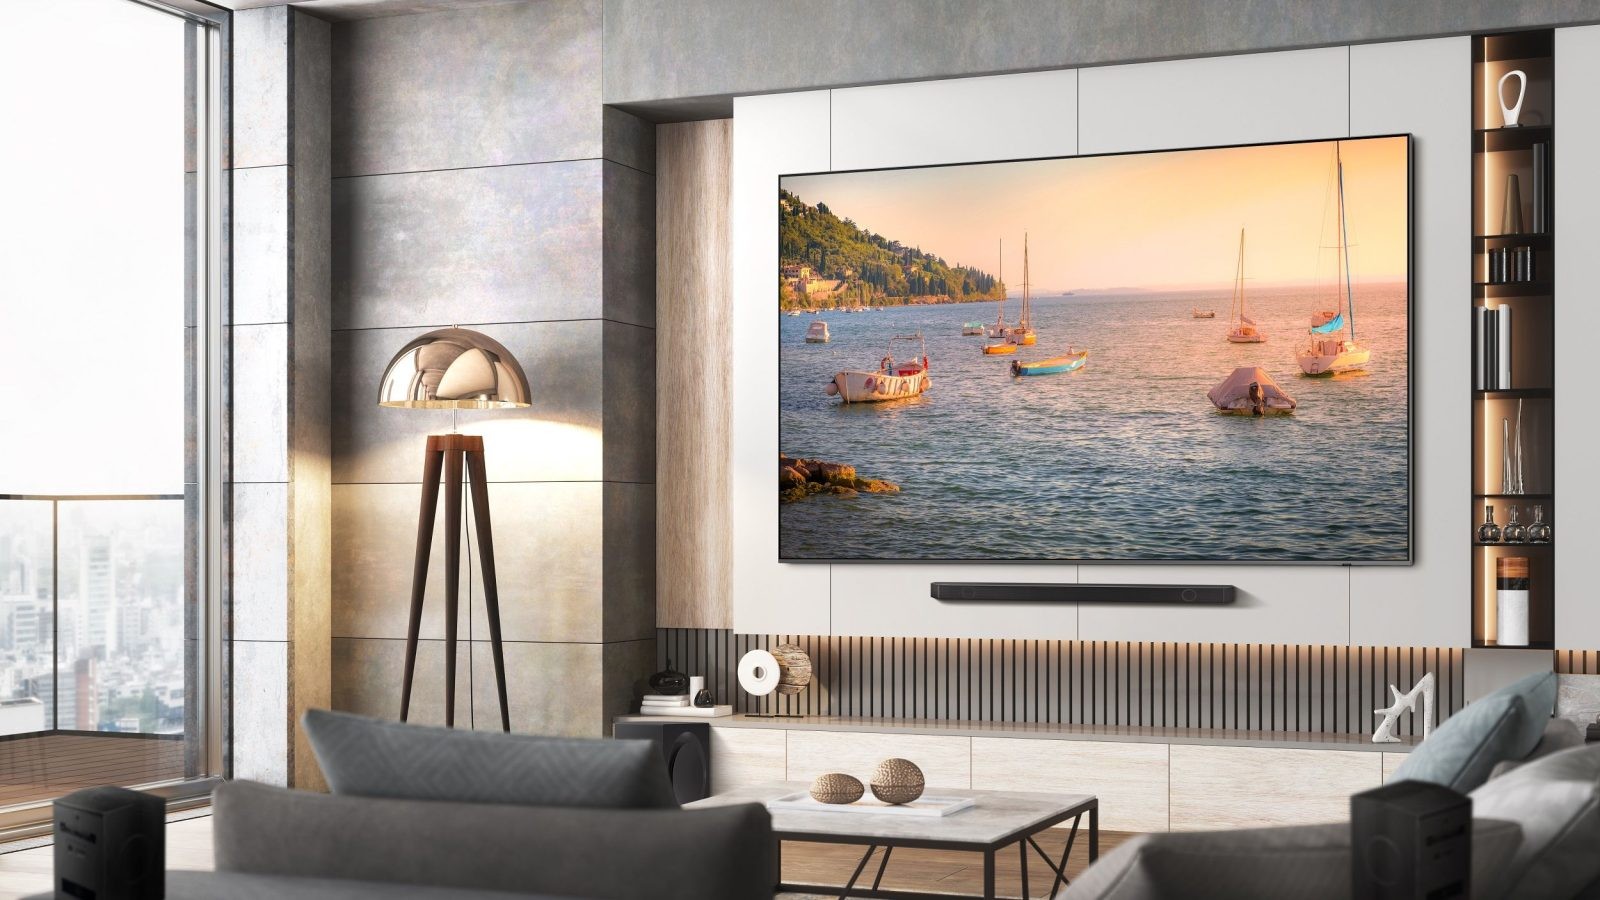 98-calowy telewizor Samsung Q80C już w przedsprzedaży. Dla najszybszych usługa profesjonalnej kalibracji gratis